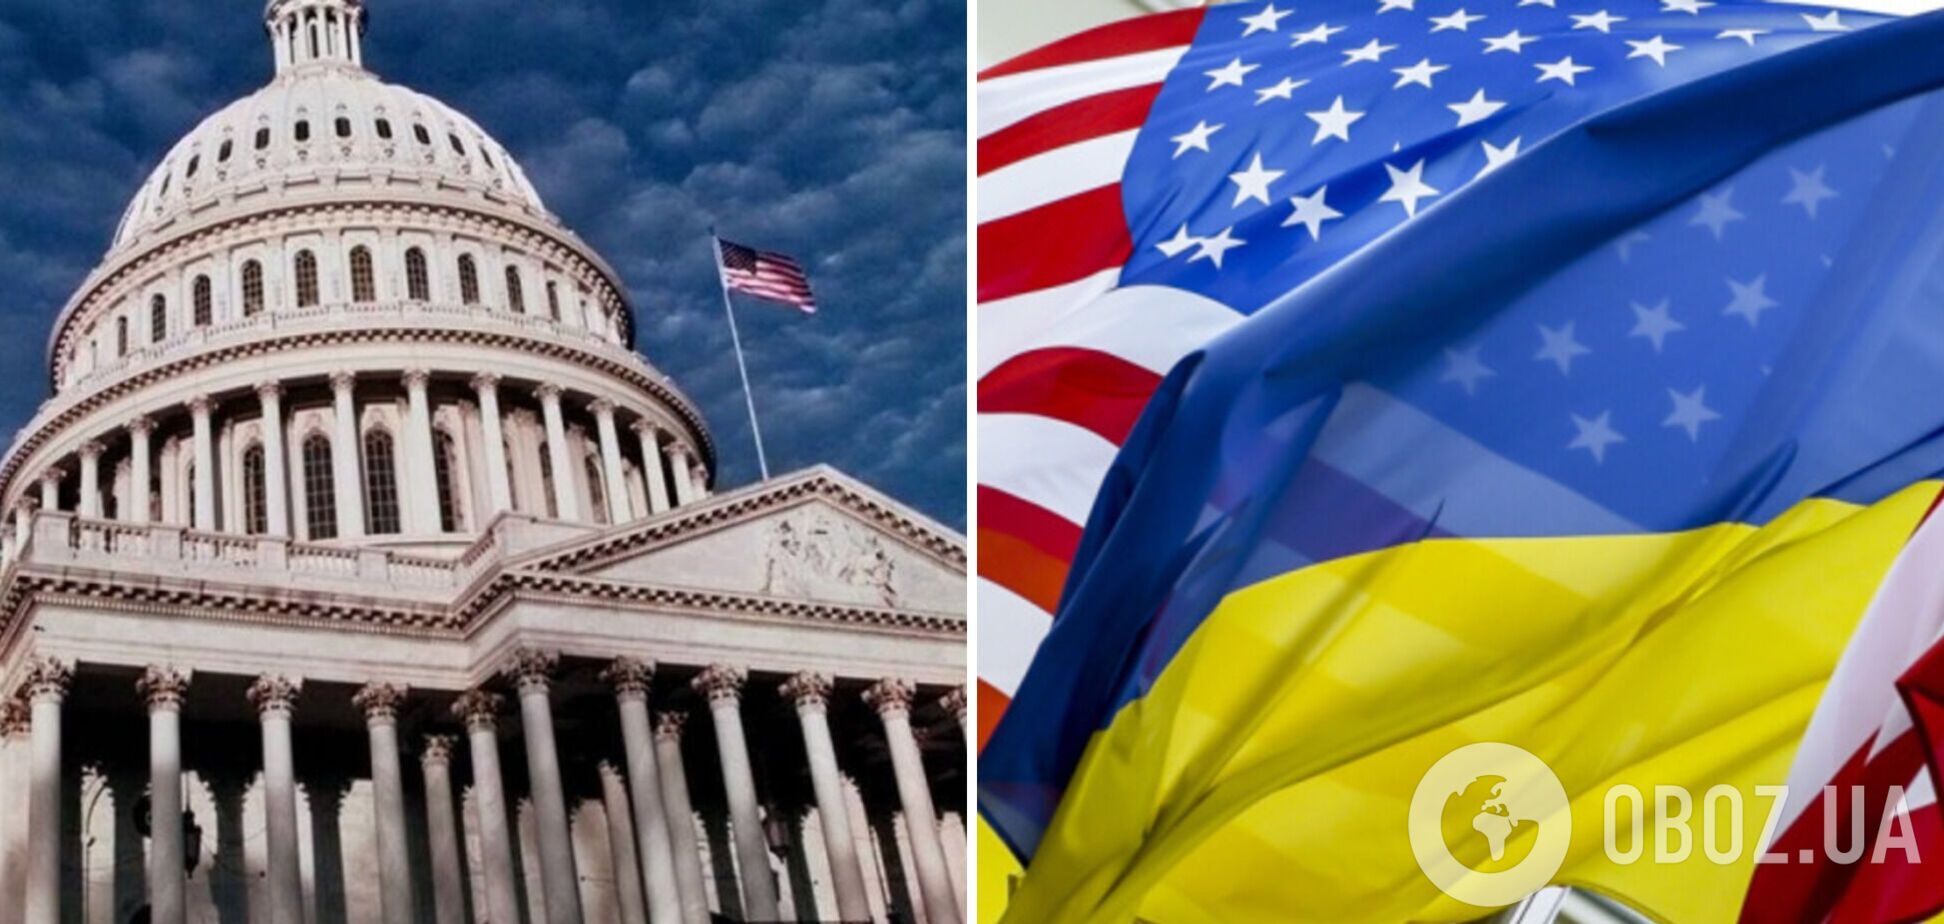 Американці шукають вихід зі складної ситуації з допомогою Україні: варіанти надання озброєння та фінансів ще є. Інтерв’ю з Огризком